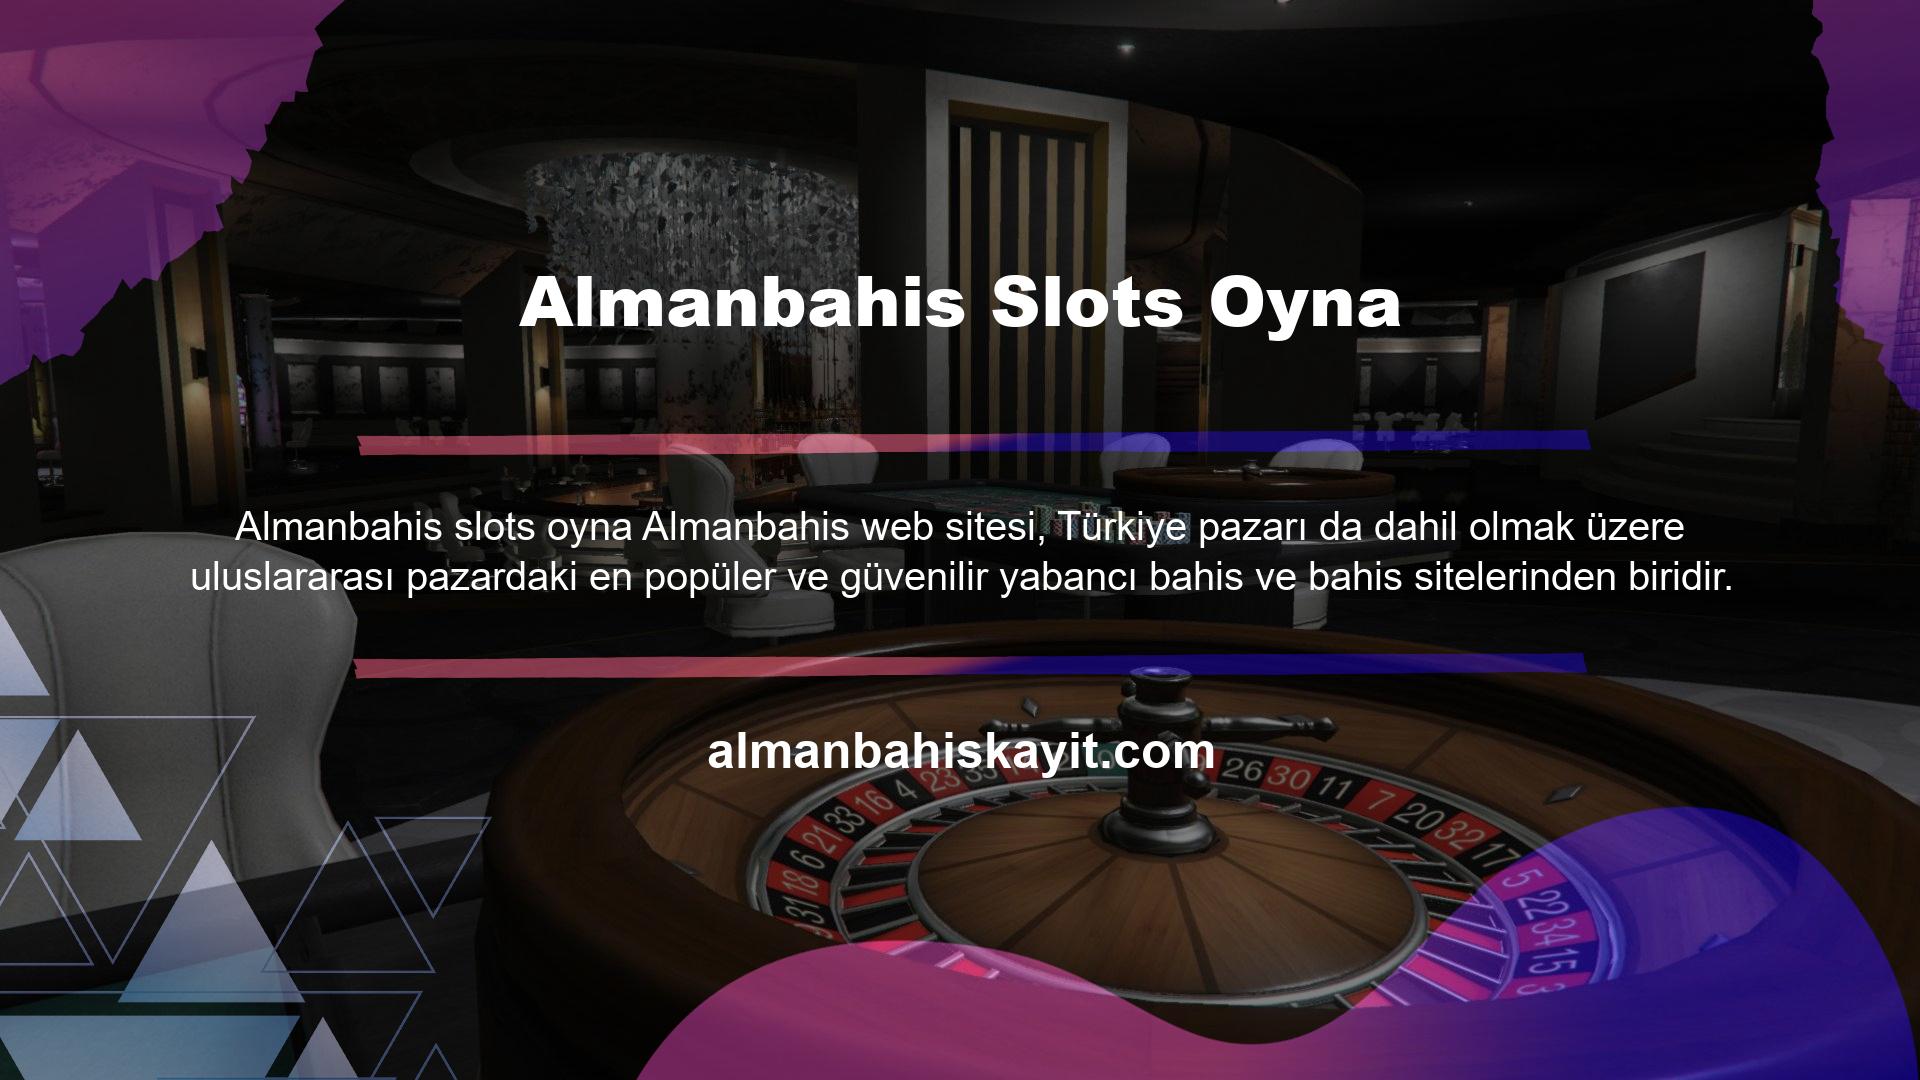 Slot makinesi oyunları da bu sitenin hizmet konseptinin bir parçasıdır ve mavi renkle işaretlenmiştir